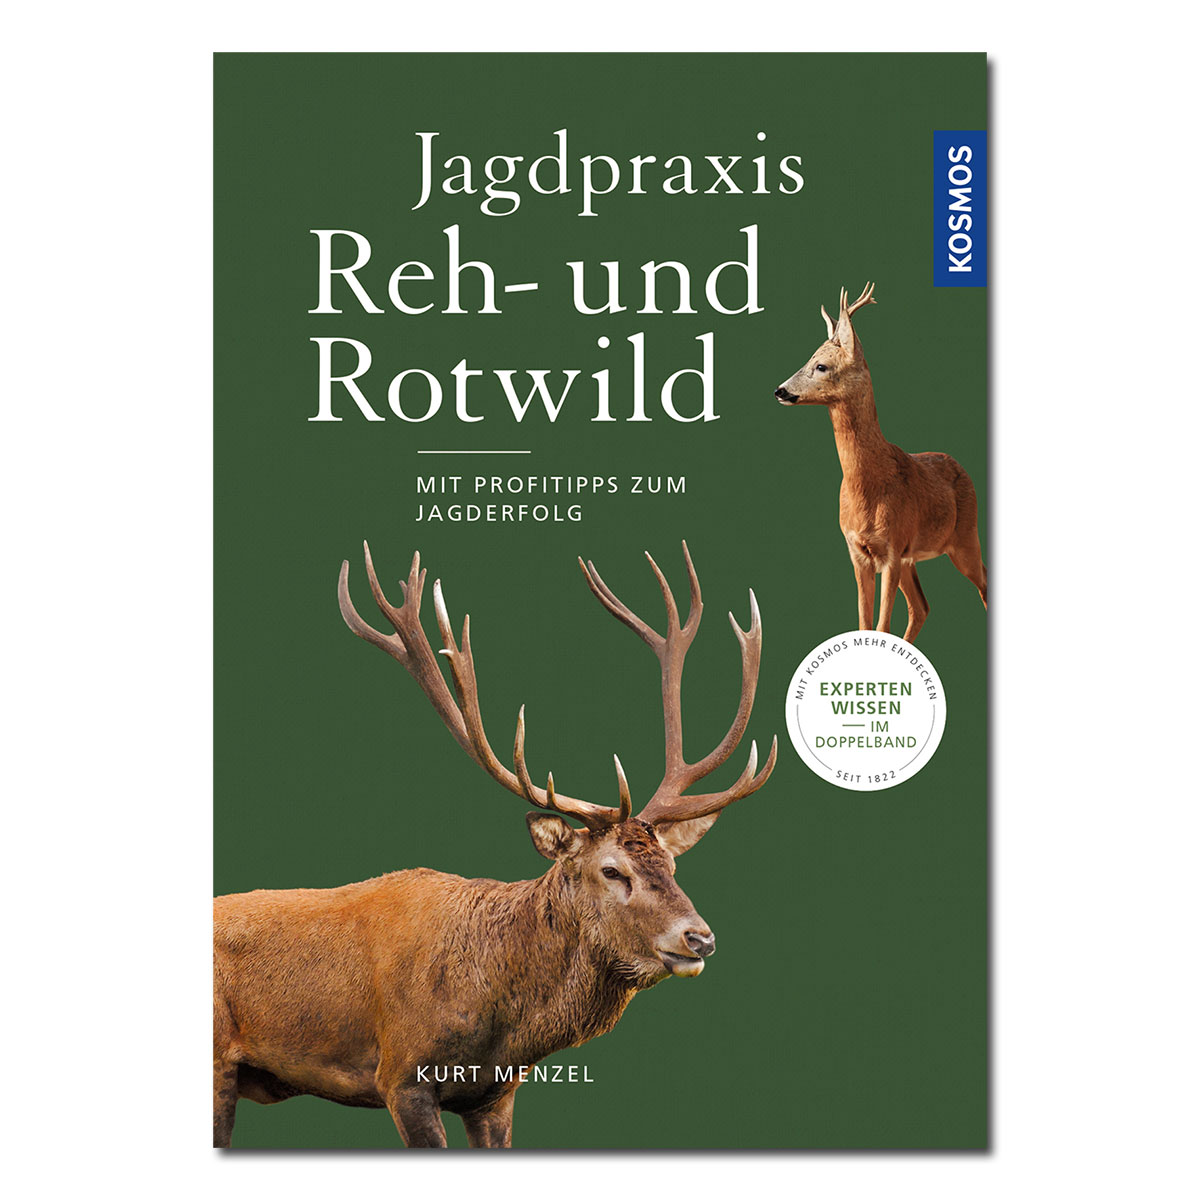 Jagdpraxis Reh- und Rotwild im Pareyshop